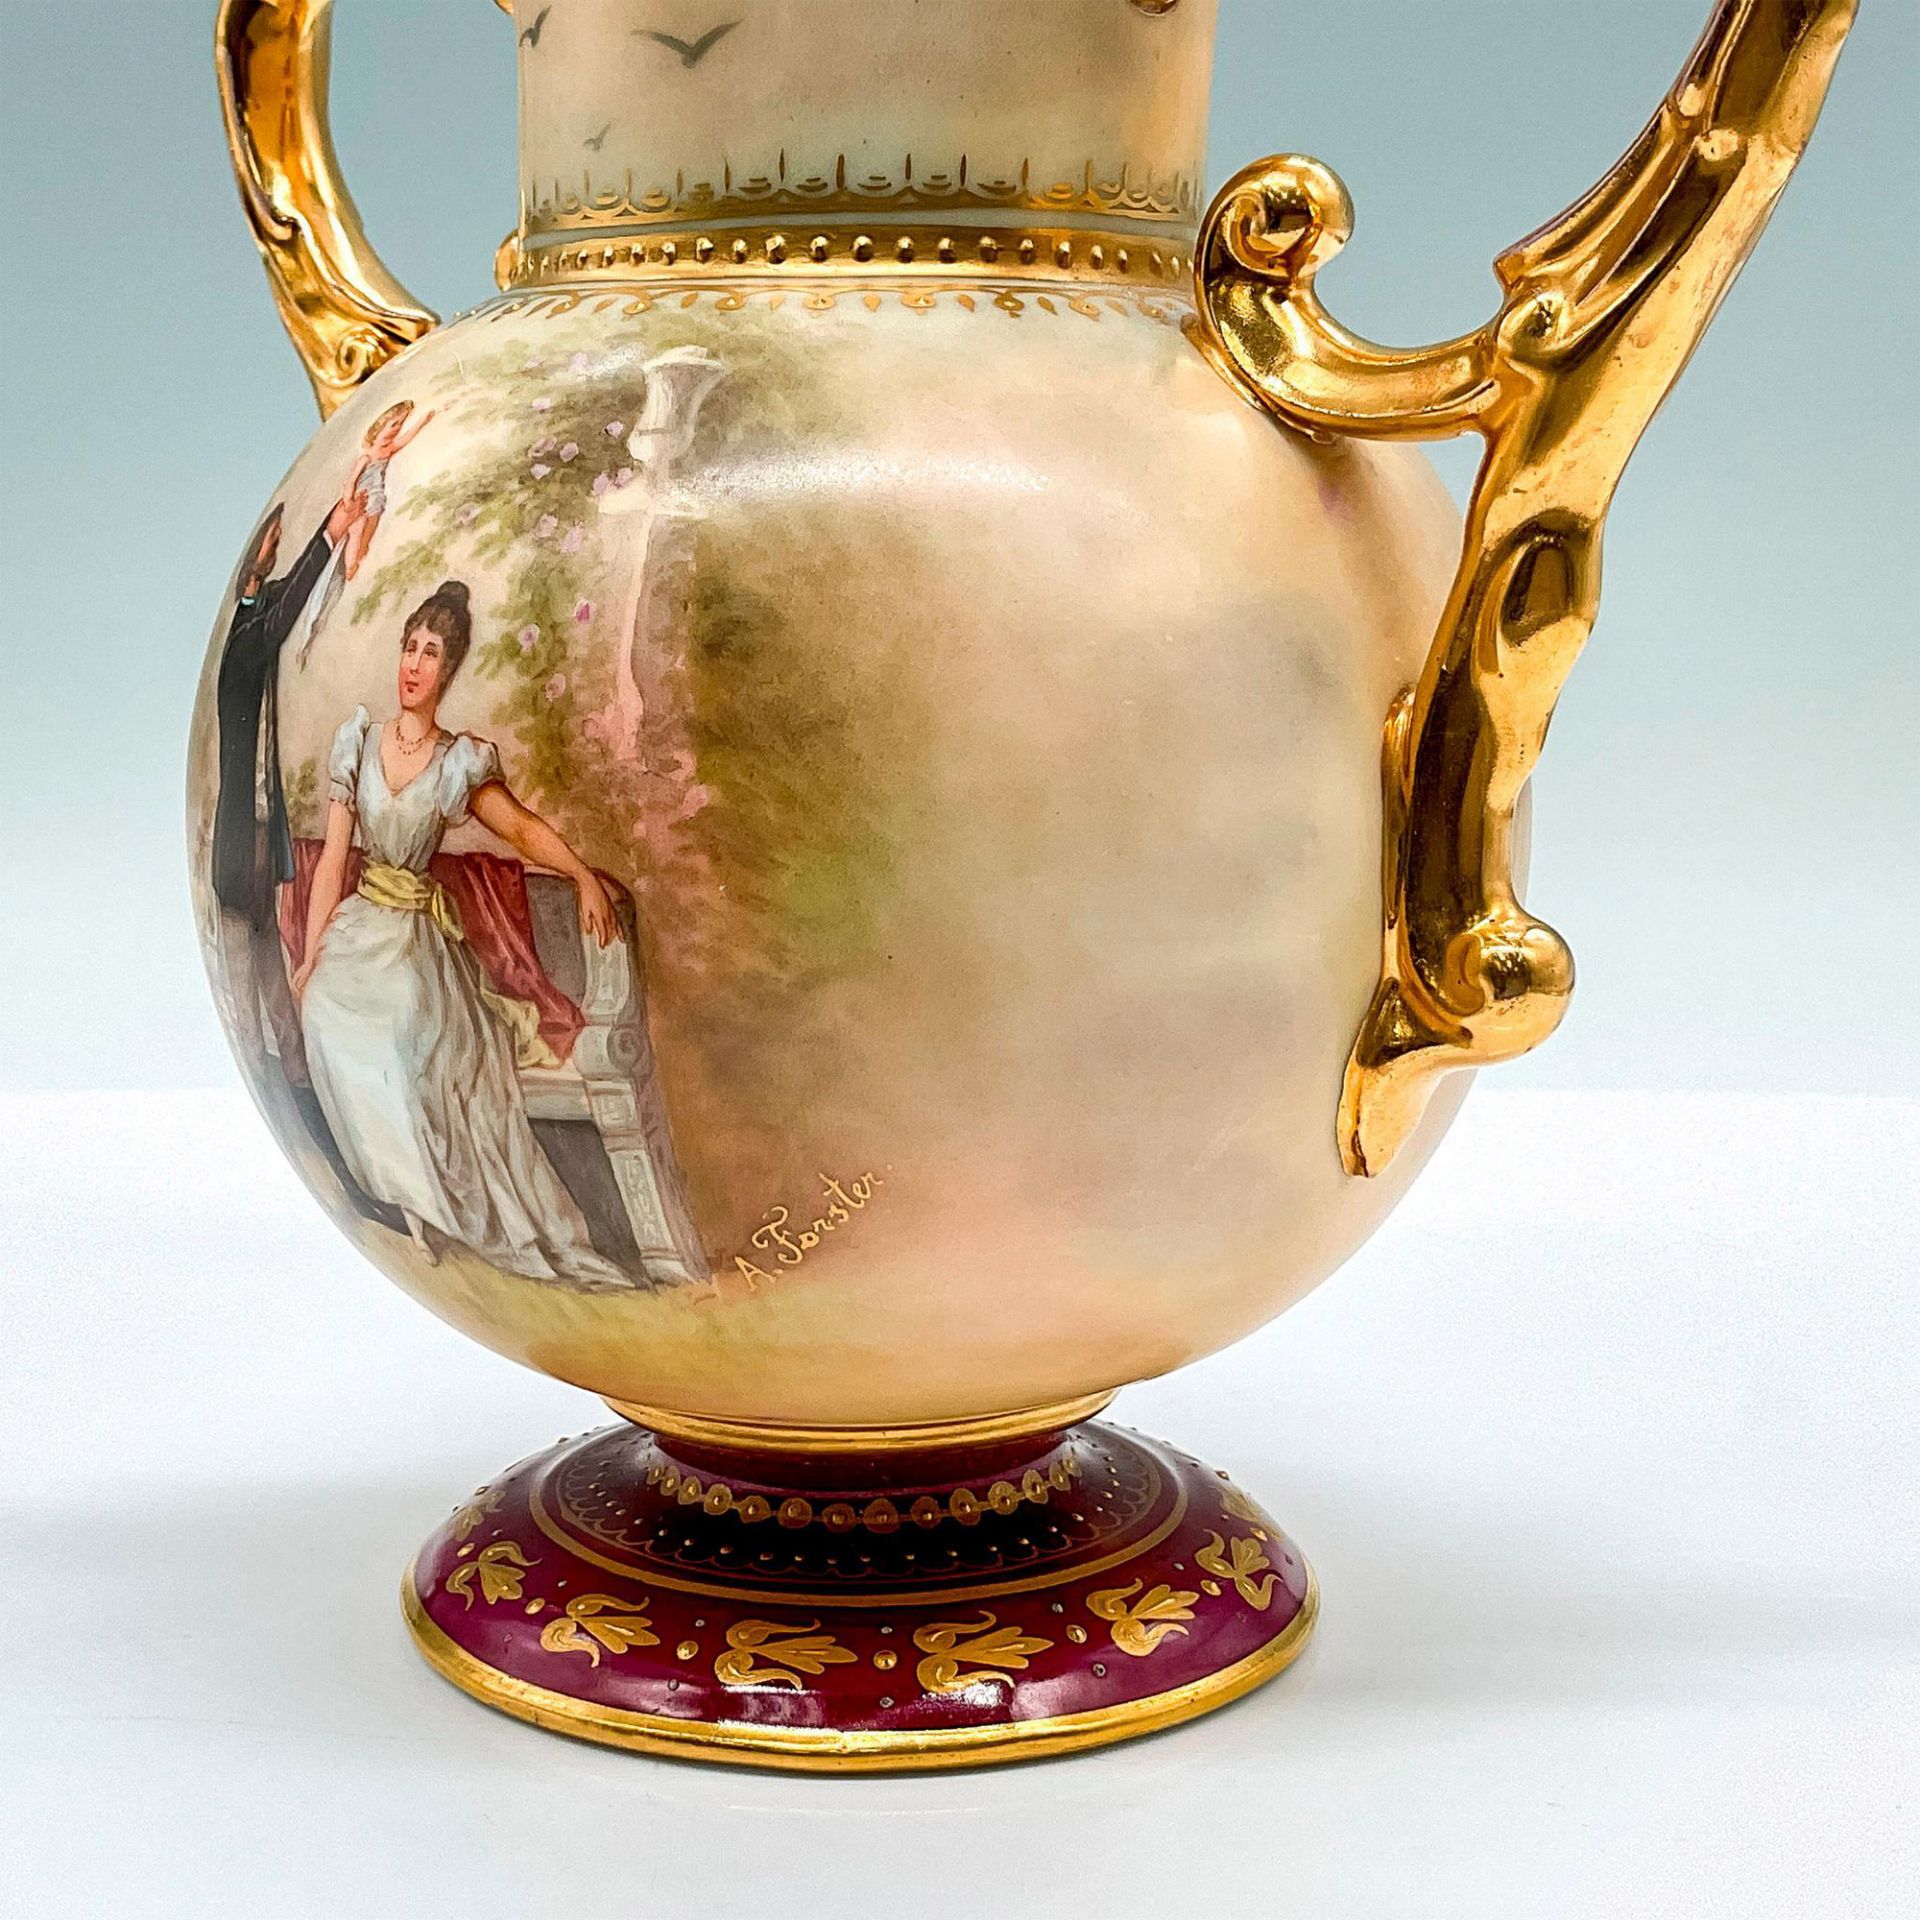 Royal Vienna Porcelain Urn - Image 3 of 4